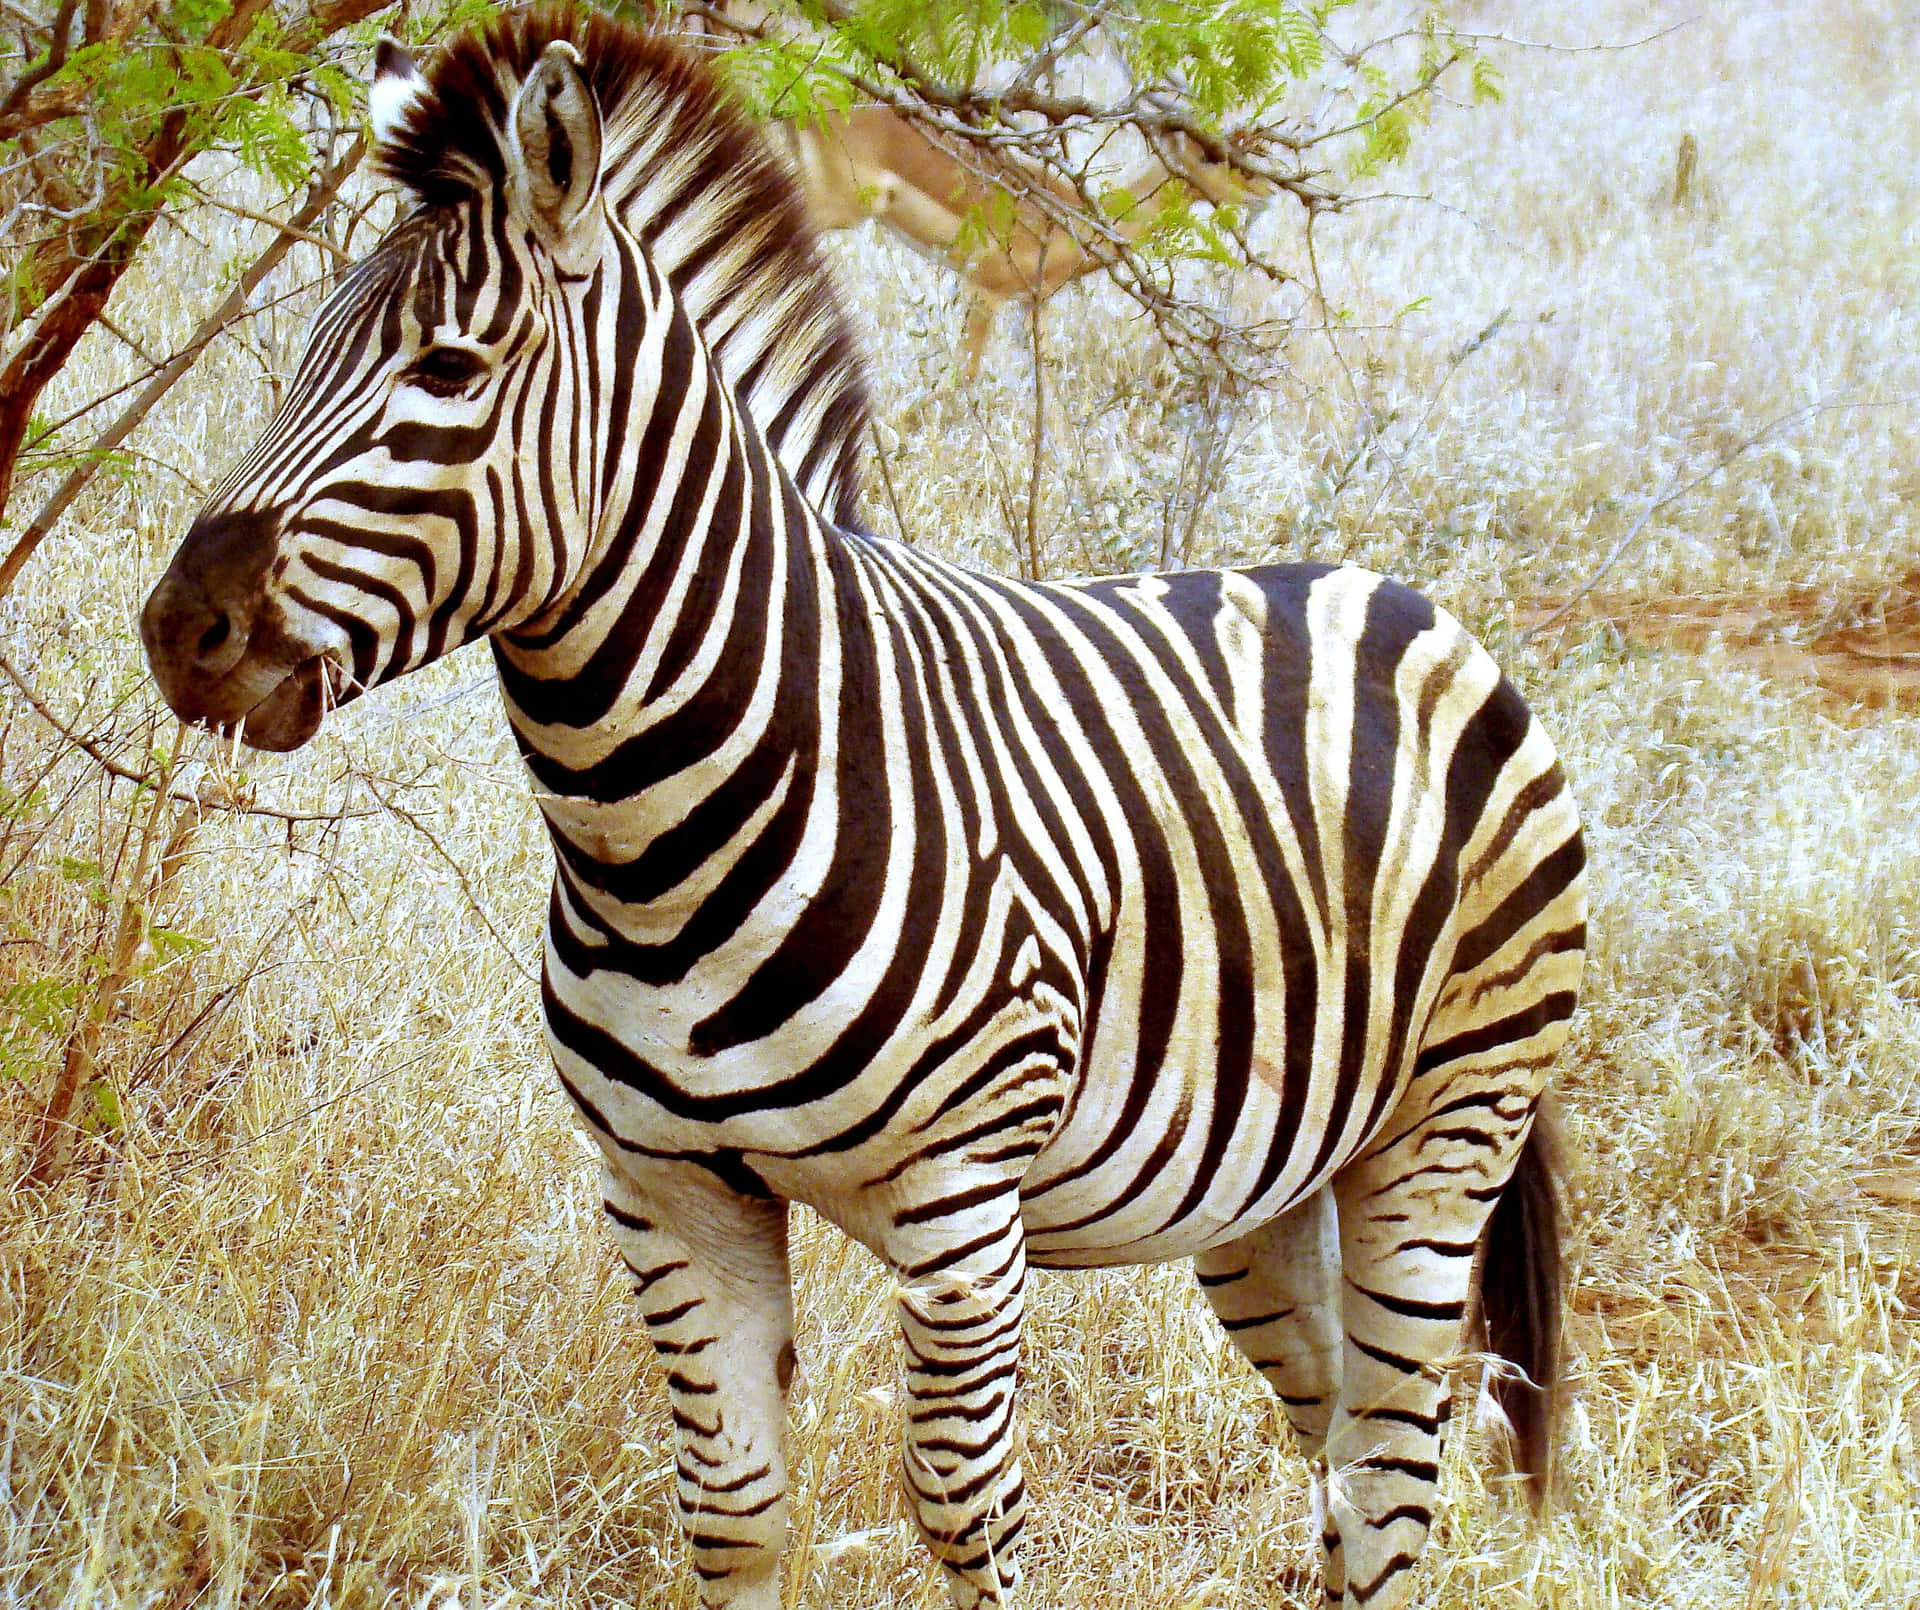 Image  Zebra standing amongst tall grass